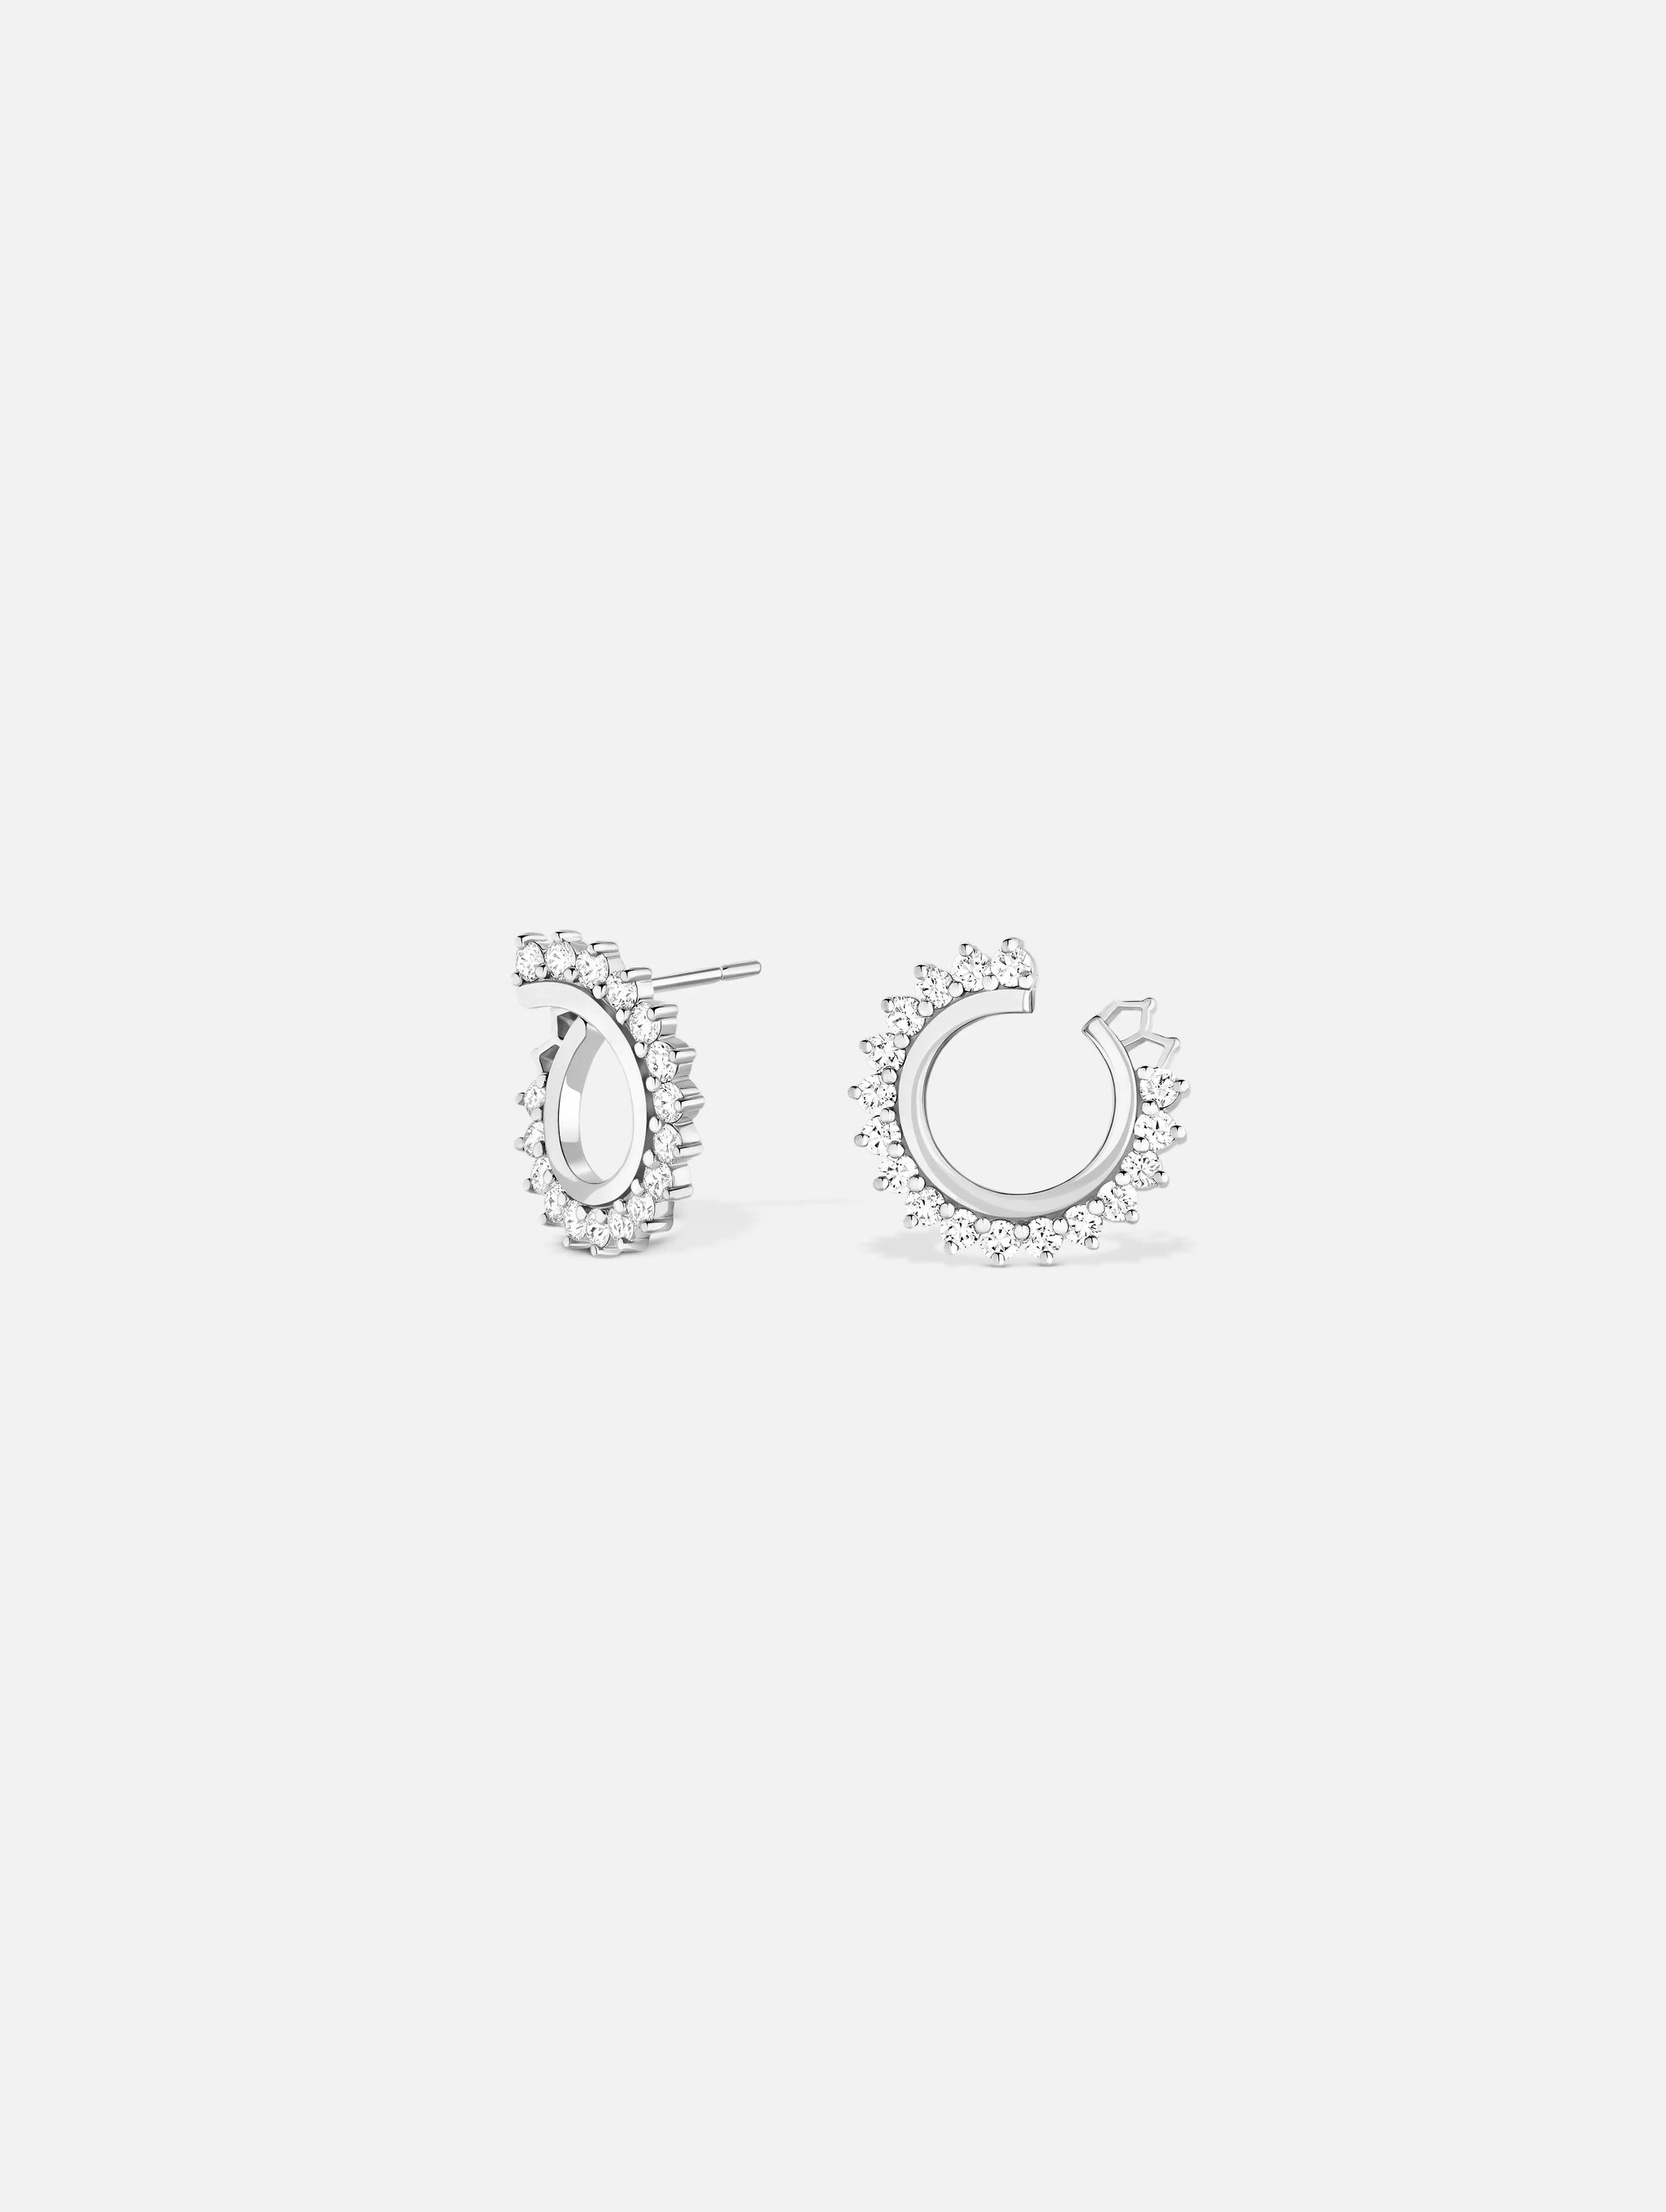 Boucles d'oreilles Vendôme Diamant en Or Blanc - 1 - Nouvel Heritage